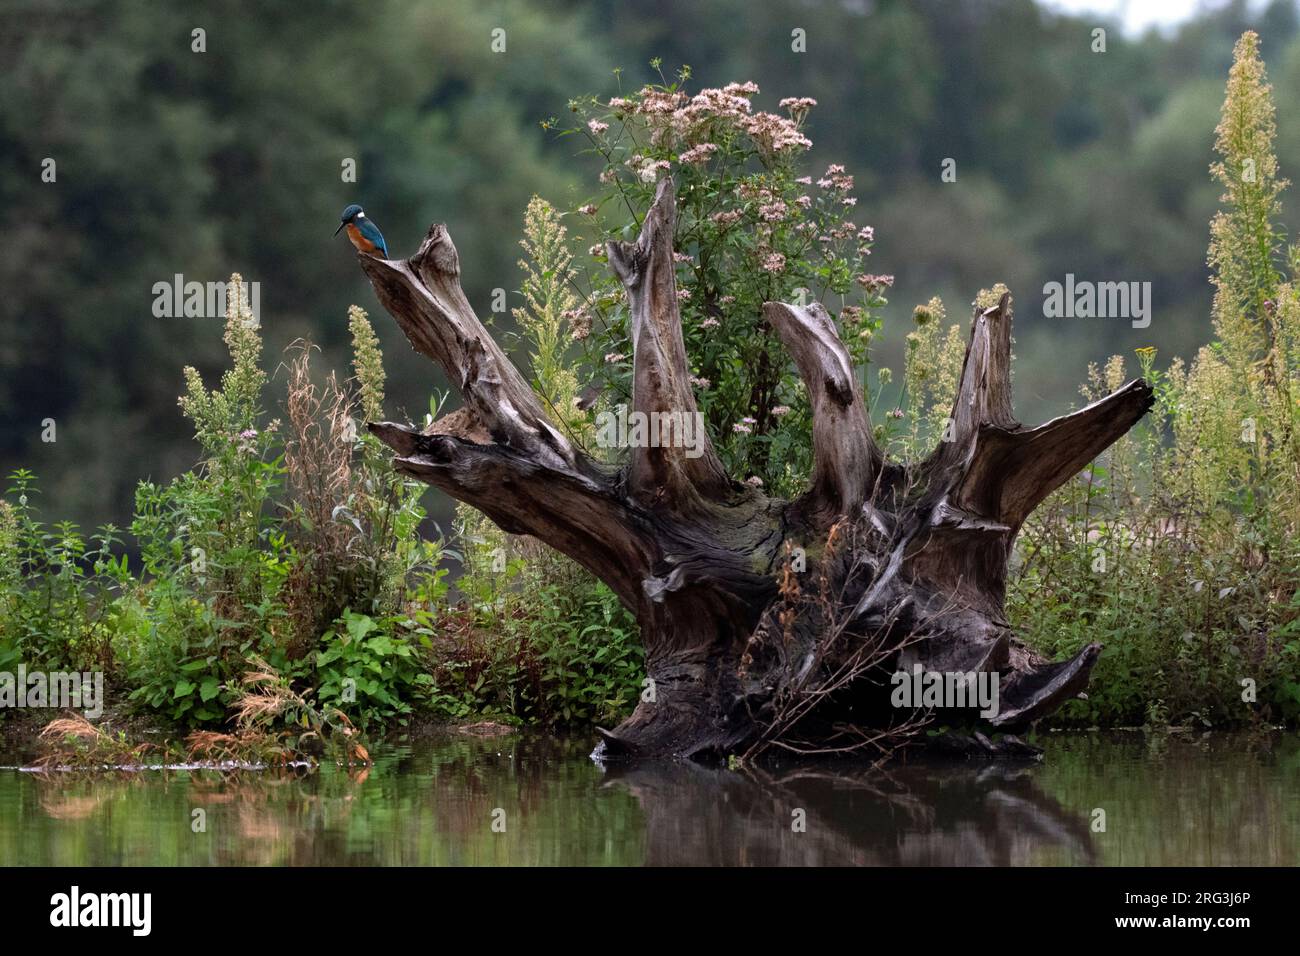 Common Kingfisher, Alcedo atthis, in den Niederlanden. Sie saß auf einem Holzstamm am Wasserrand und suchte Beute. Stockfoto